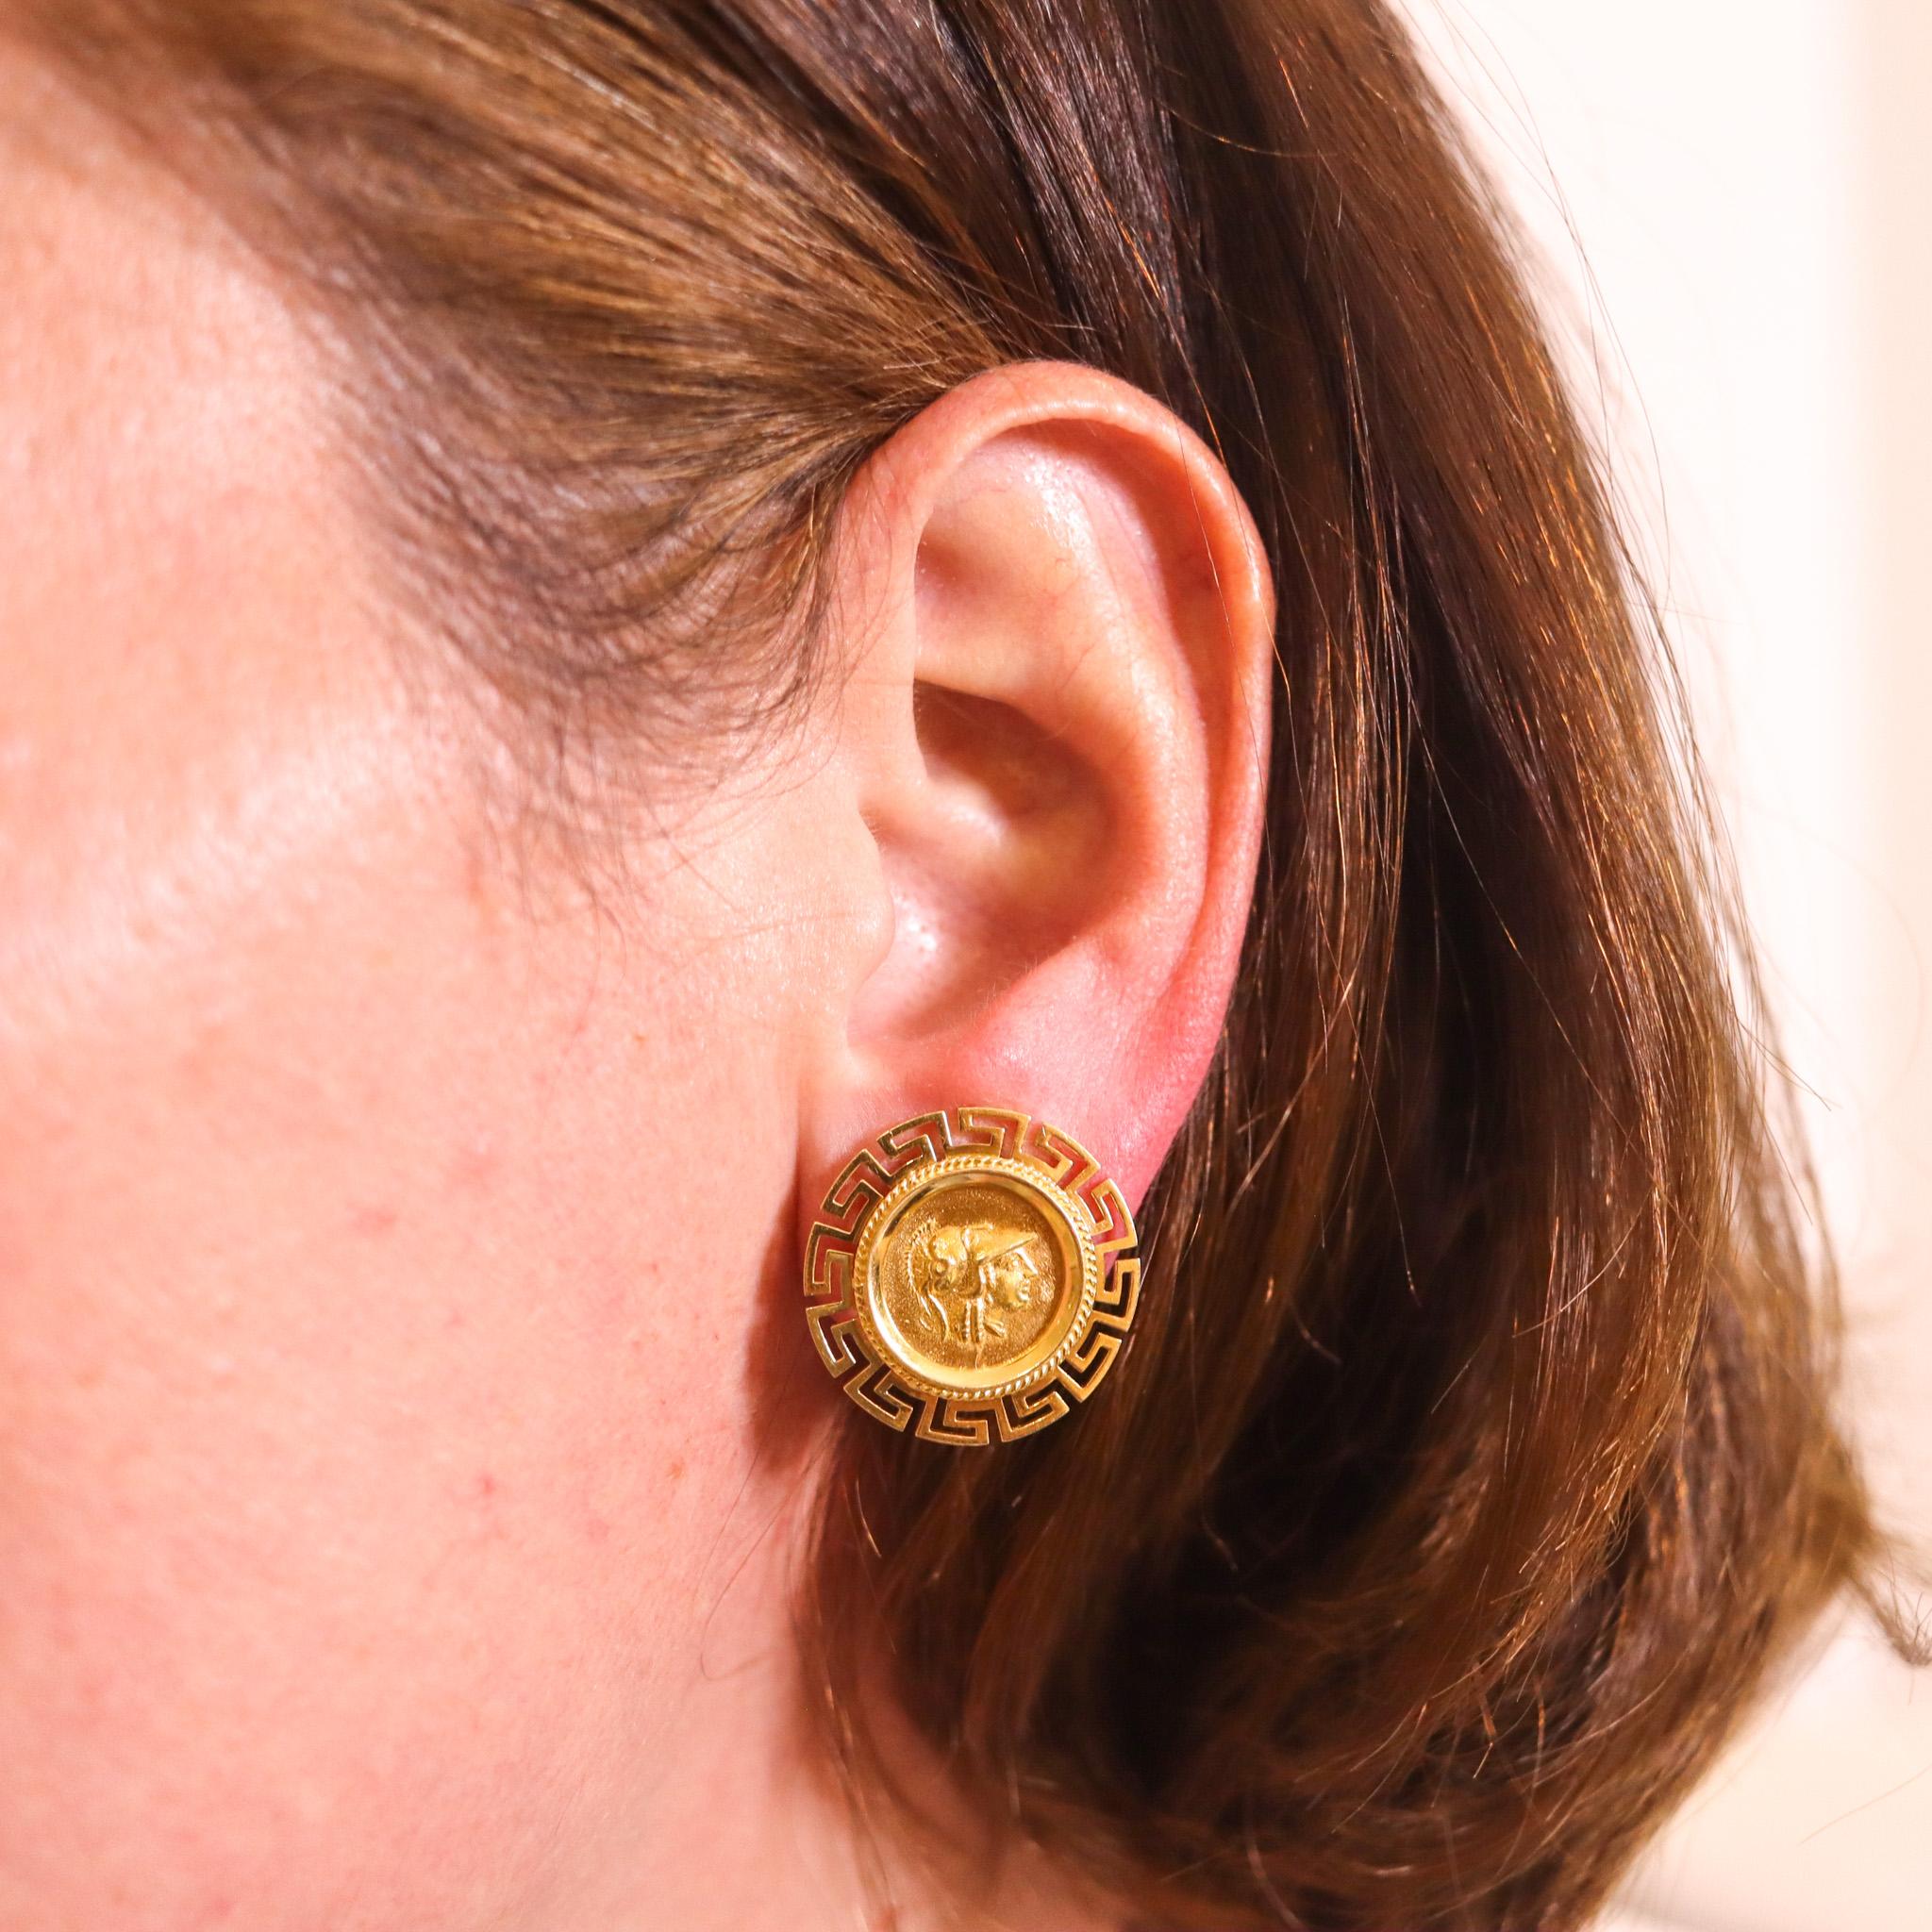 Boucles d'oreilles de style néo-grec avec des pièces d'or.

Très belle paire de boucles d'oreilles classiques, réalisées avec des motifs de style grec en or jaune massif de 18 carats avec une finition très polie. Elles sont ornées de deux pièces